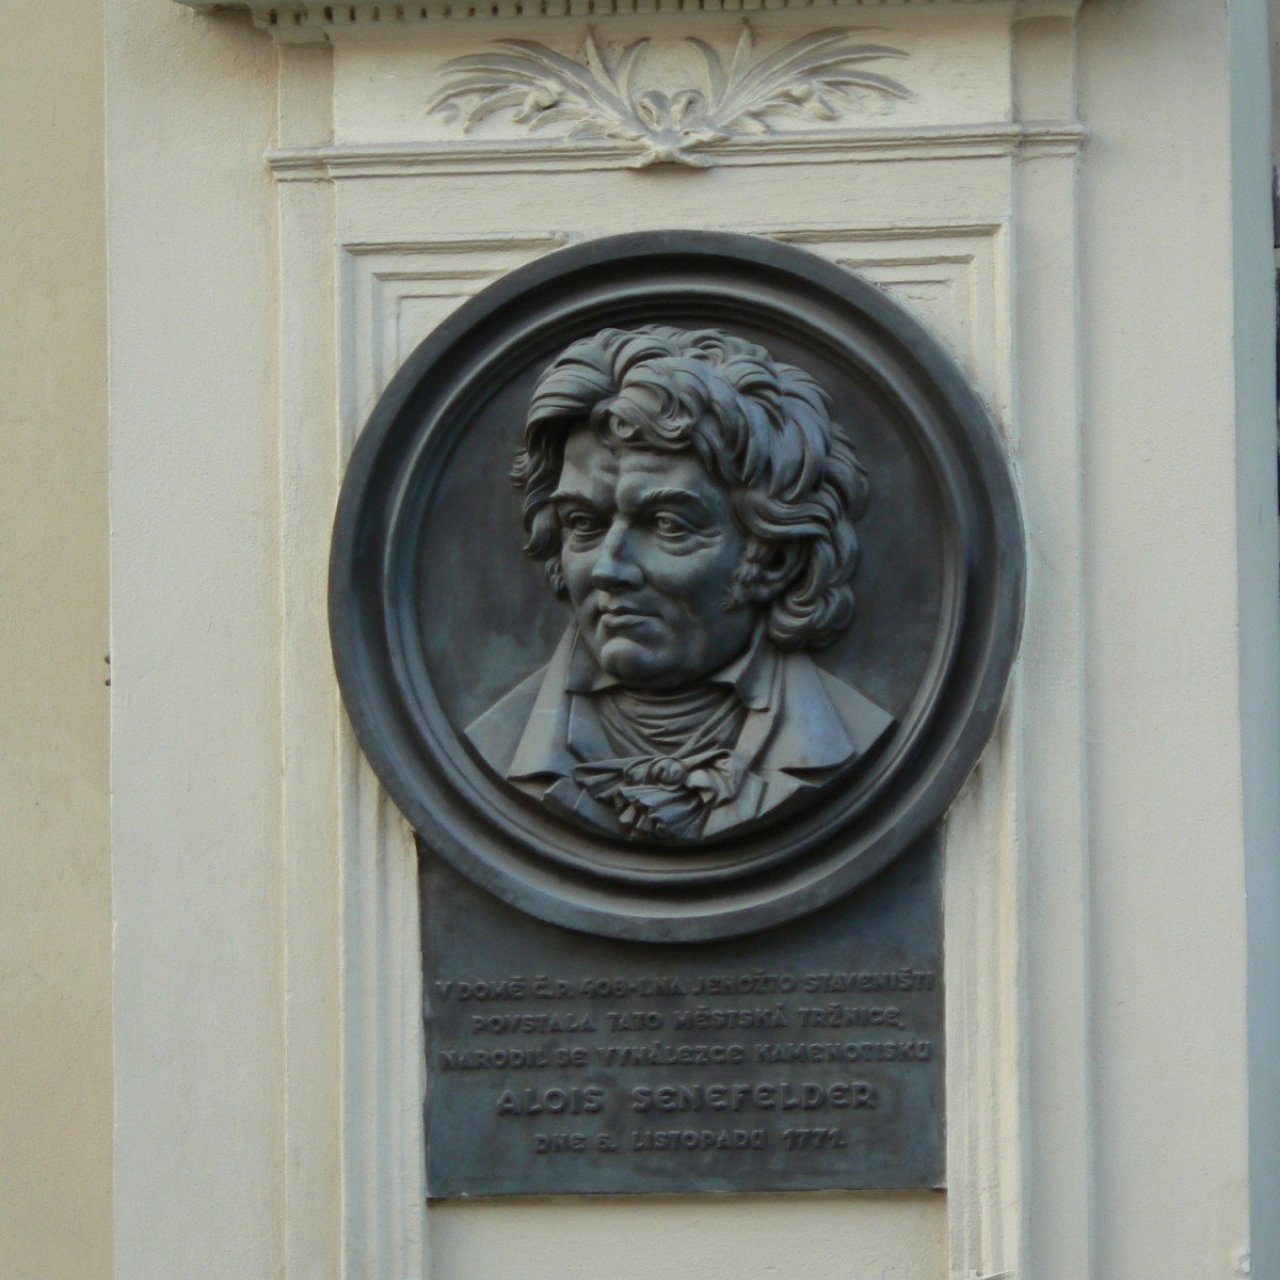 Praha 1 - Rytířská - pamětní deska Alois Senefelder